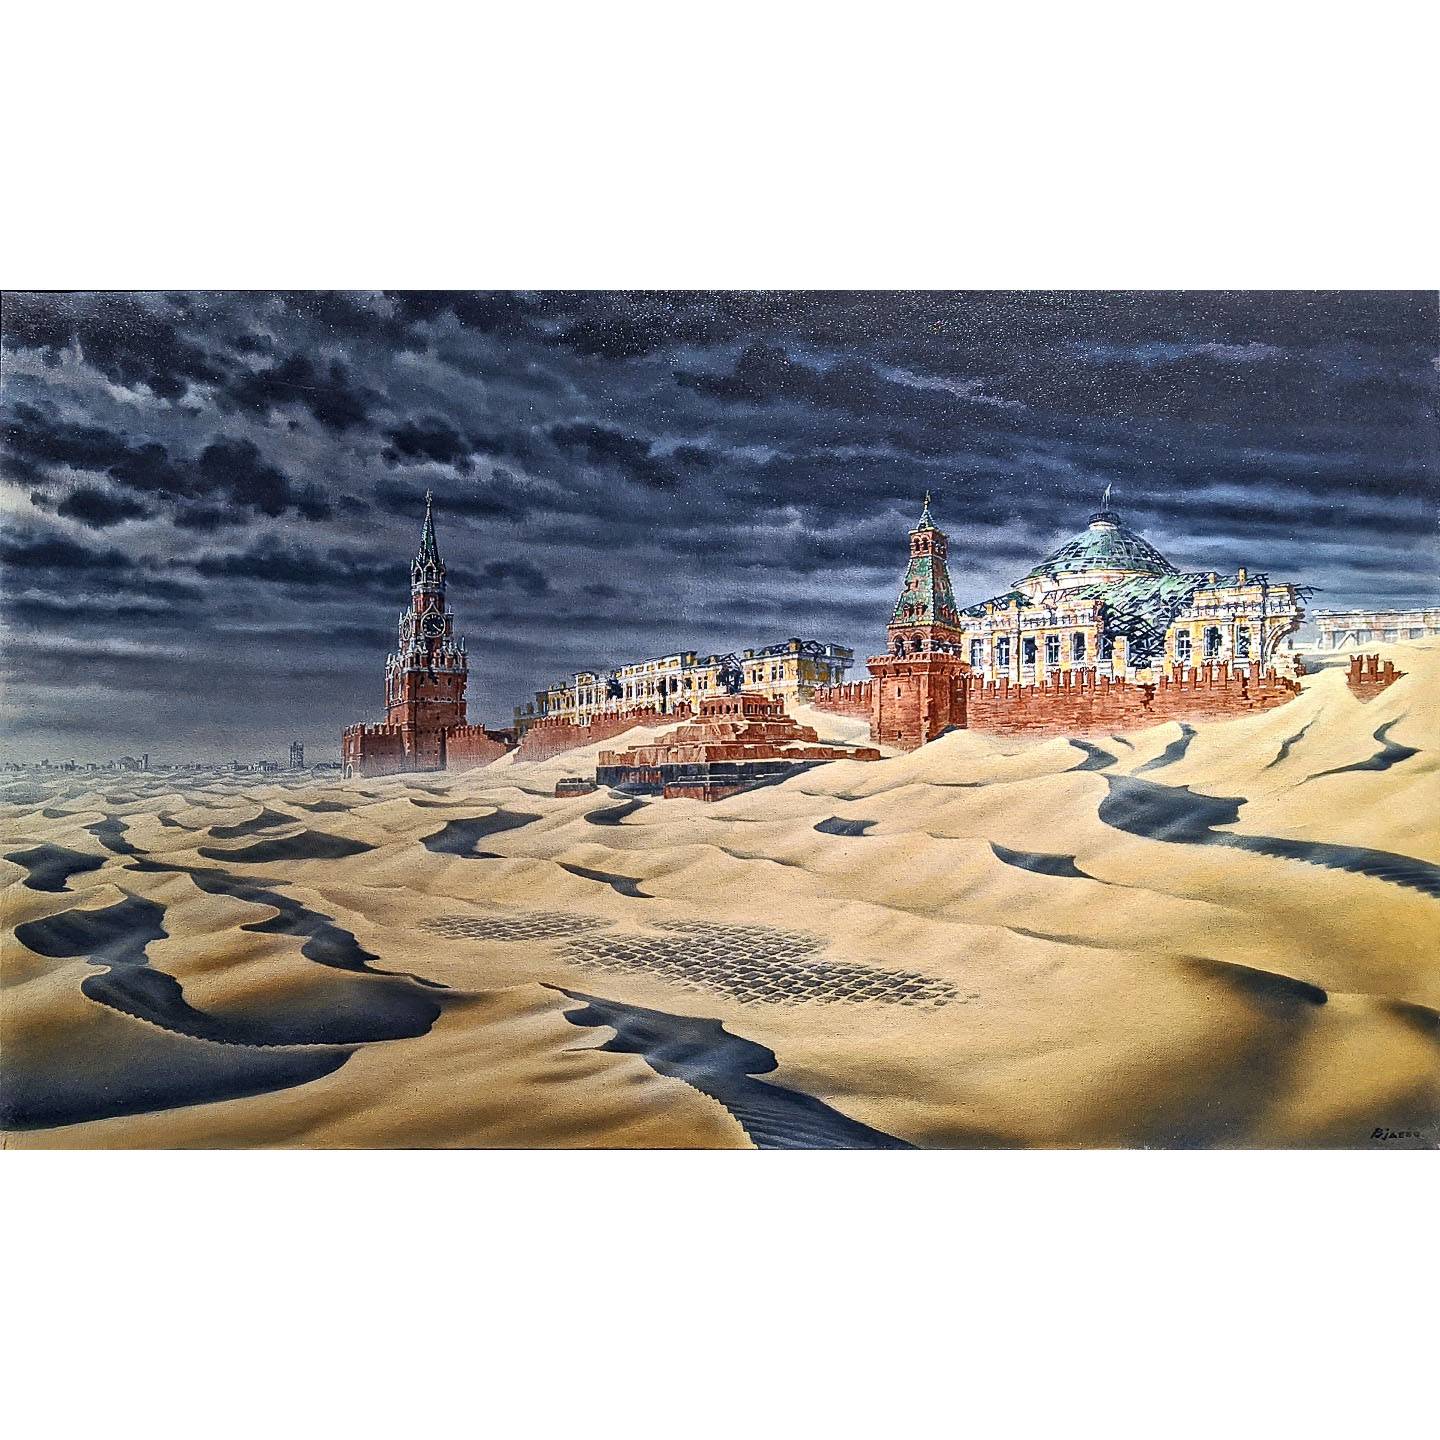 Вадим Бжассо. Кремль в песках. 2016